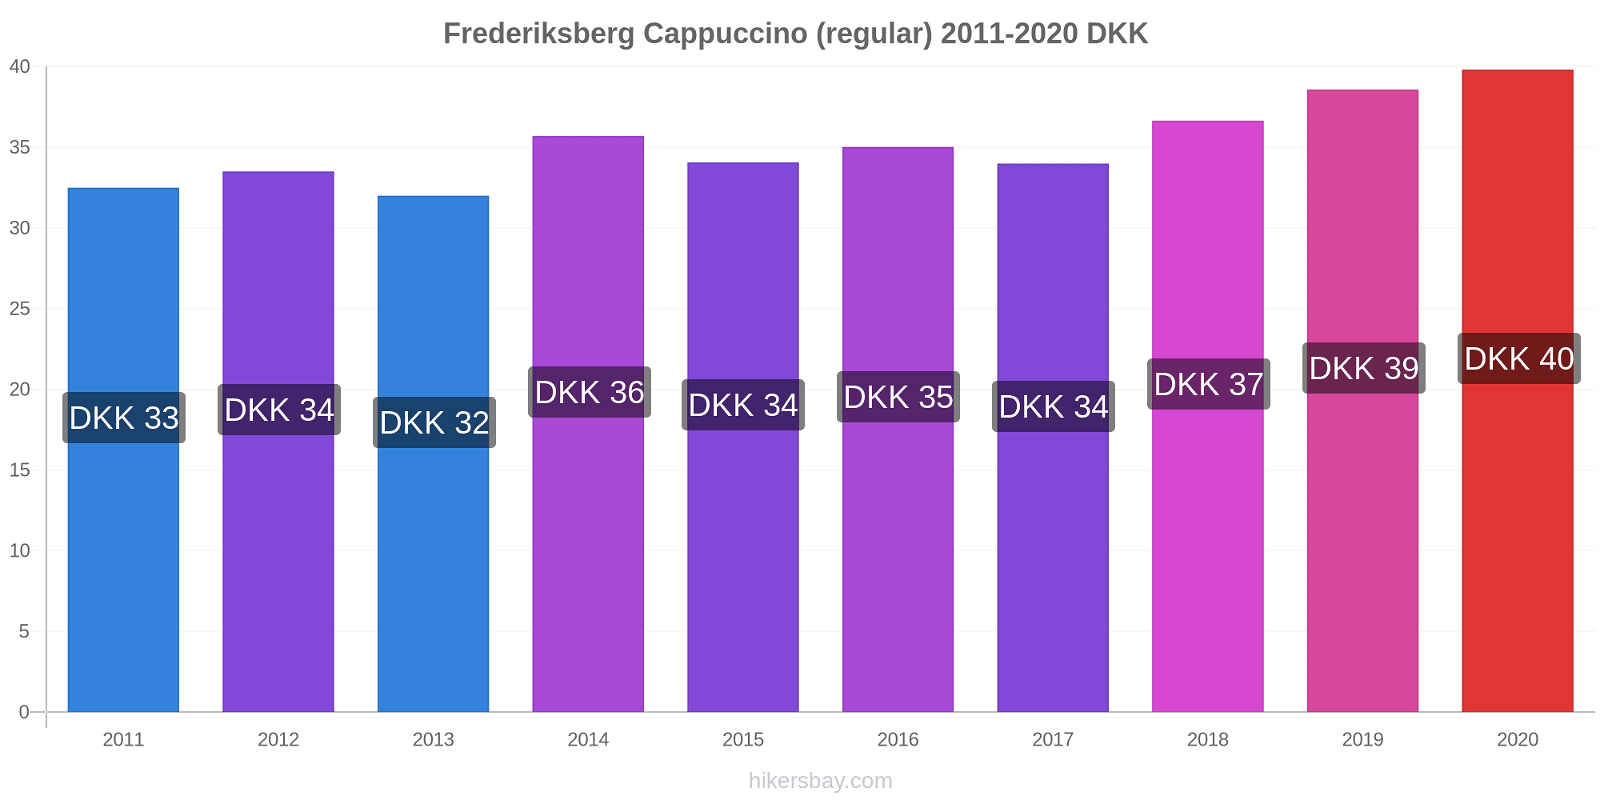 Frederiksberg price changes Cappuccino (regular) hikersbay.com